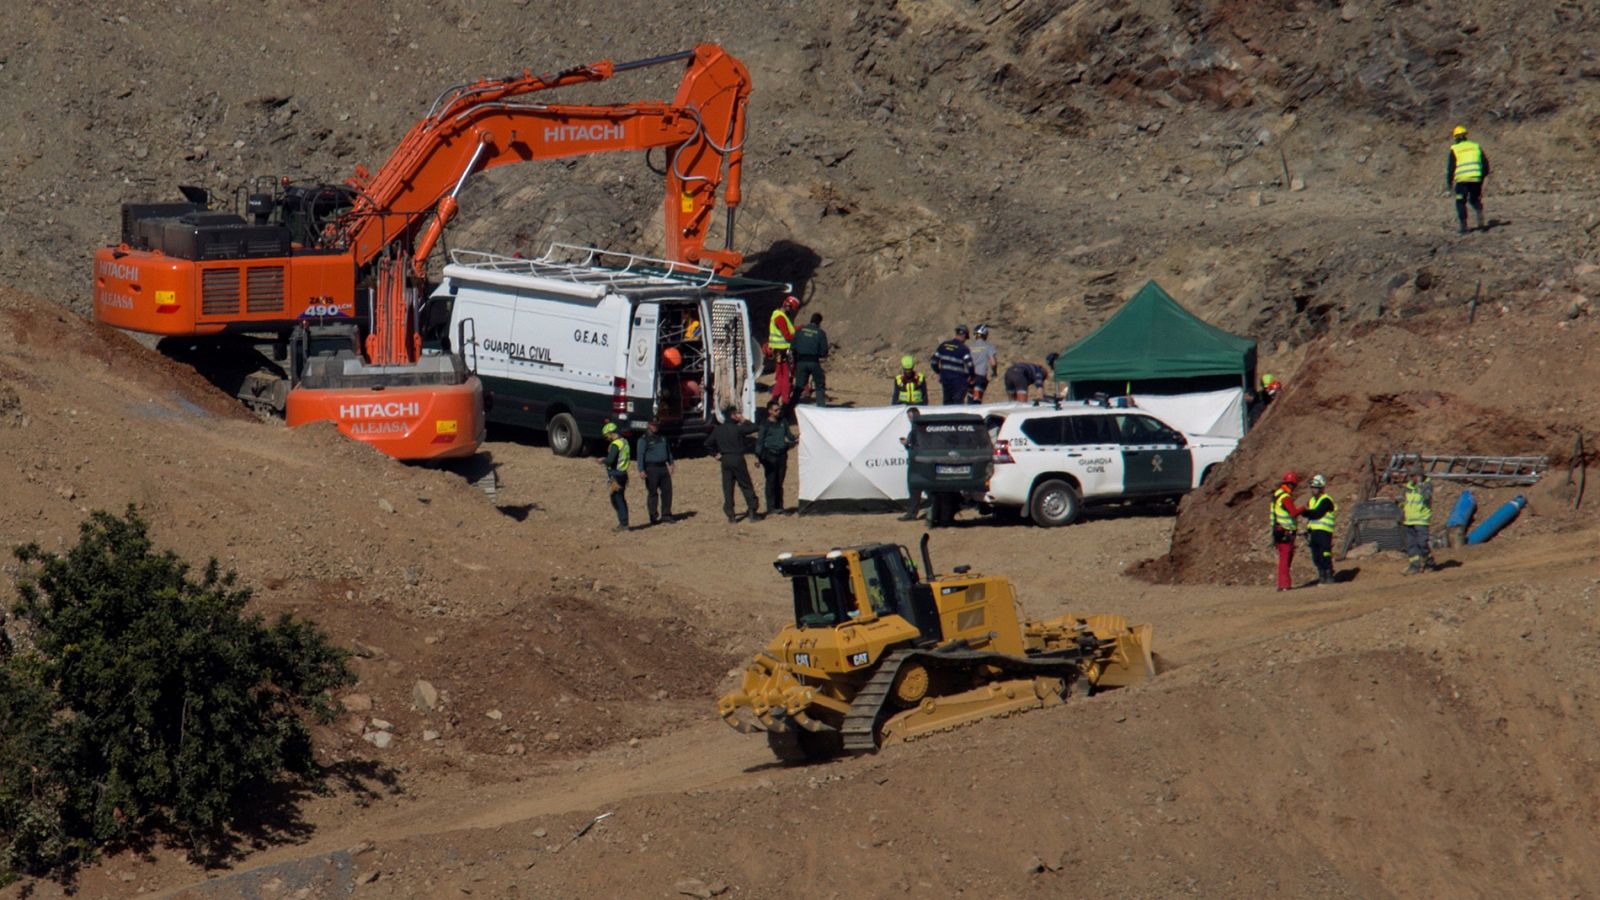 Rescate Julen : Doce días de operativo para rescatar a Julen en un terreno difícil con 40.000 toneladas de tierra removidas - RTVE.es